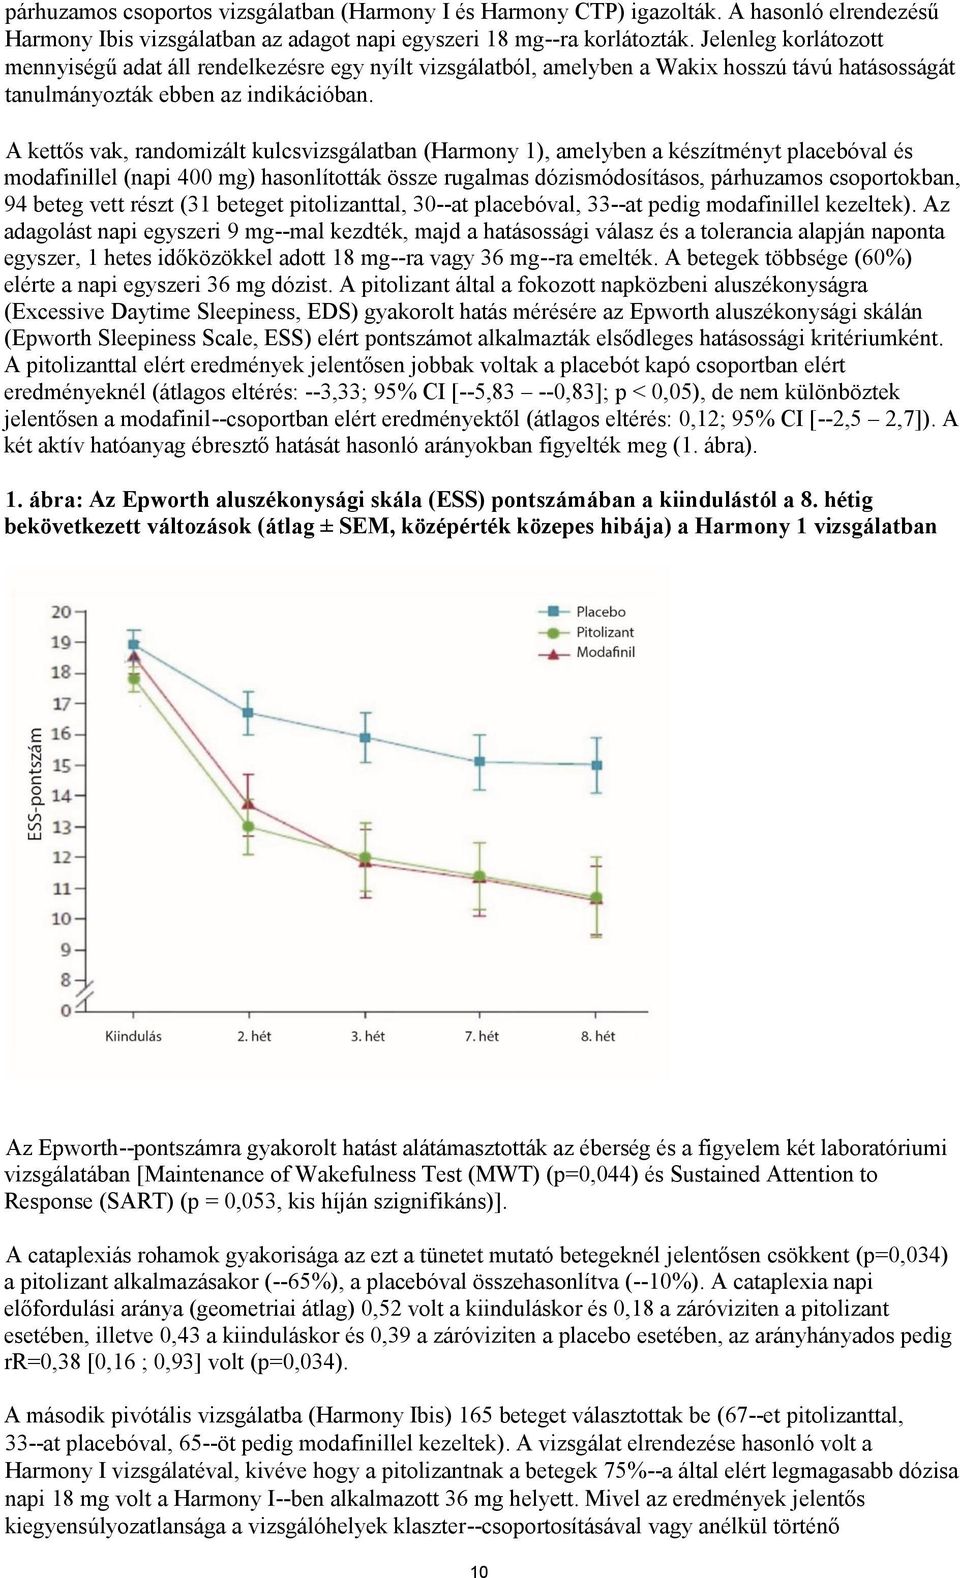 A kettős vak, randomizált kulcsvizsgálatban (Harmony 1), amelyben a készítményt placebóval és modafinillel (napi 400 mg) hasonlították össze rugalmas dózismódosításos, párhuzamos csoportokban, 94